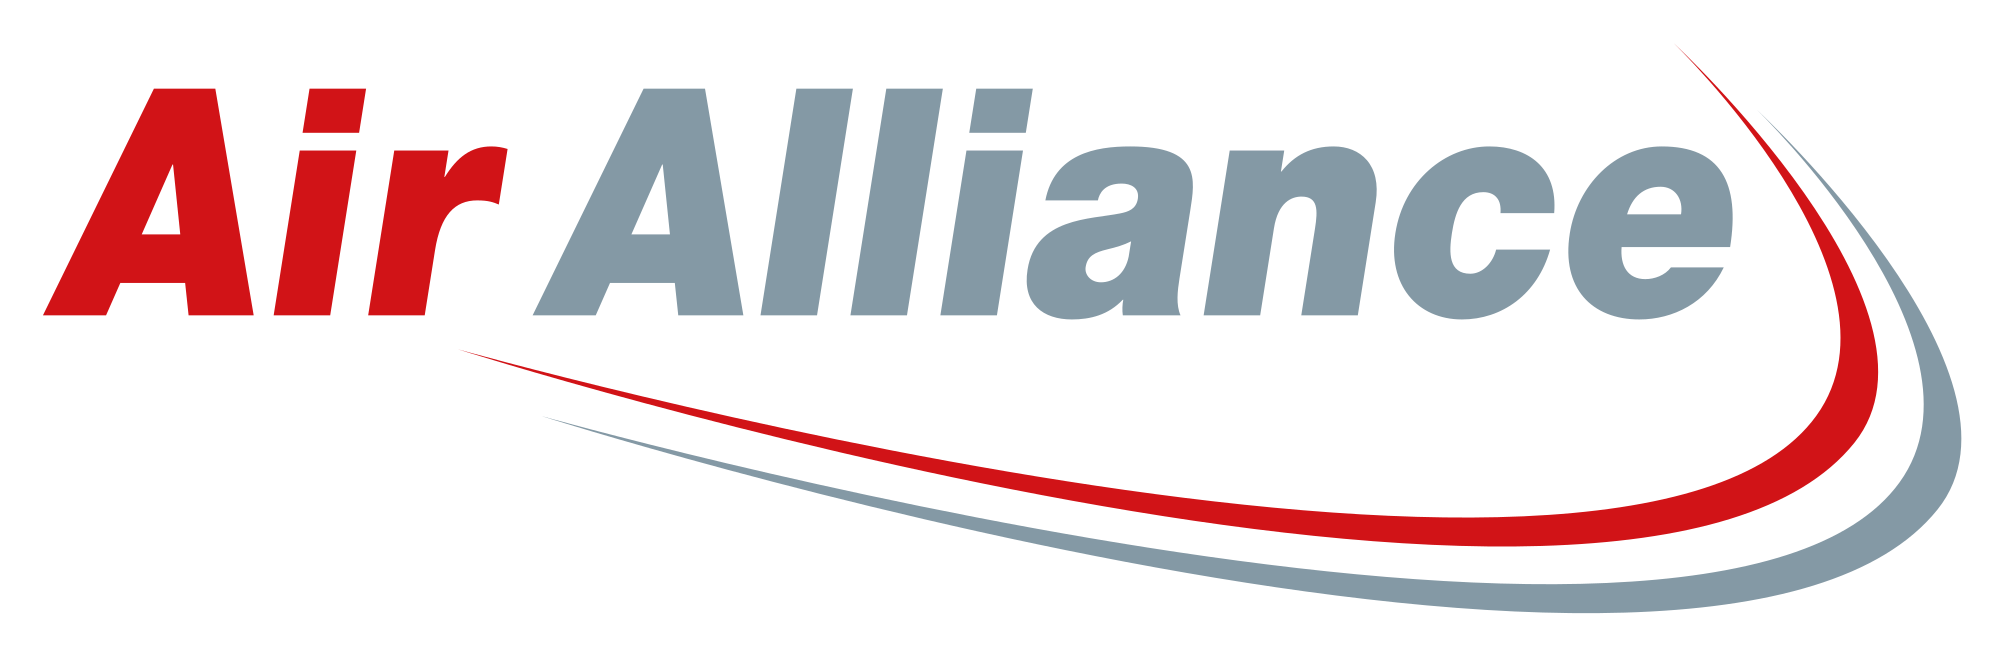 Air Express Logo - Air Alliance Express Logo.svg